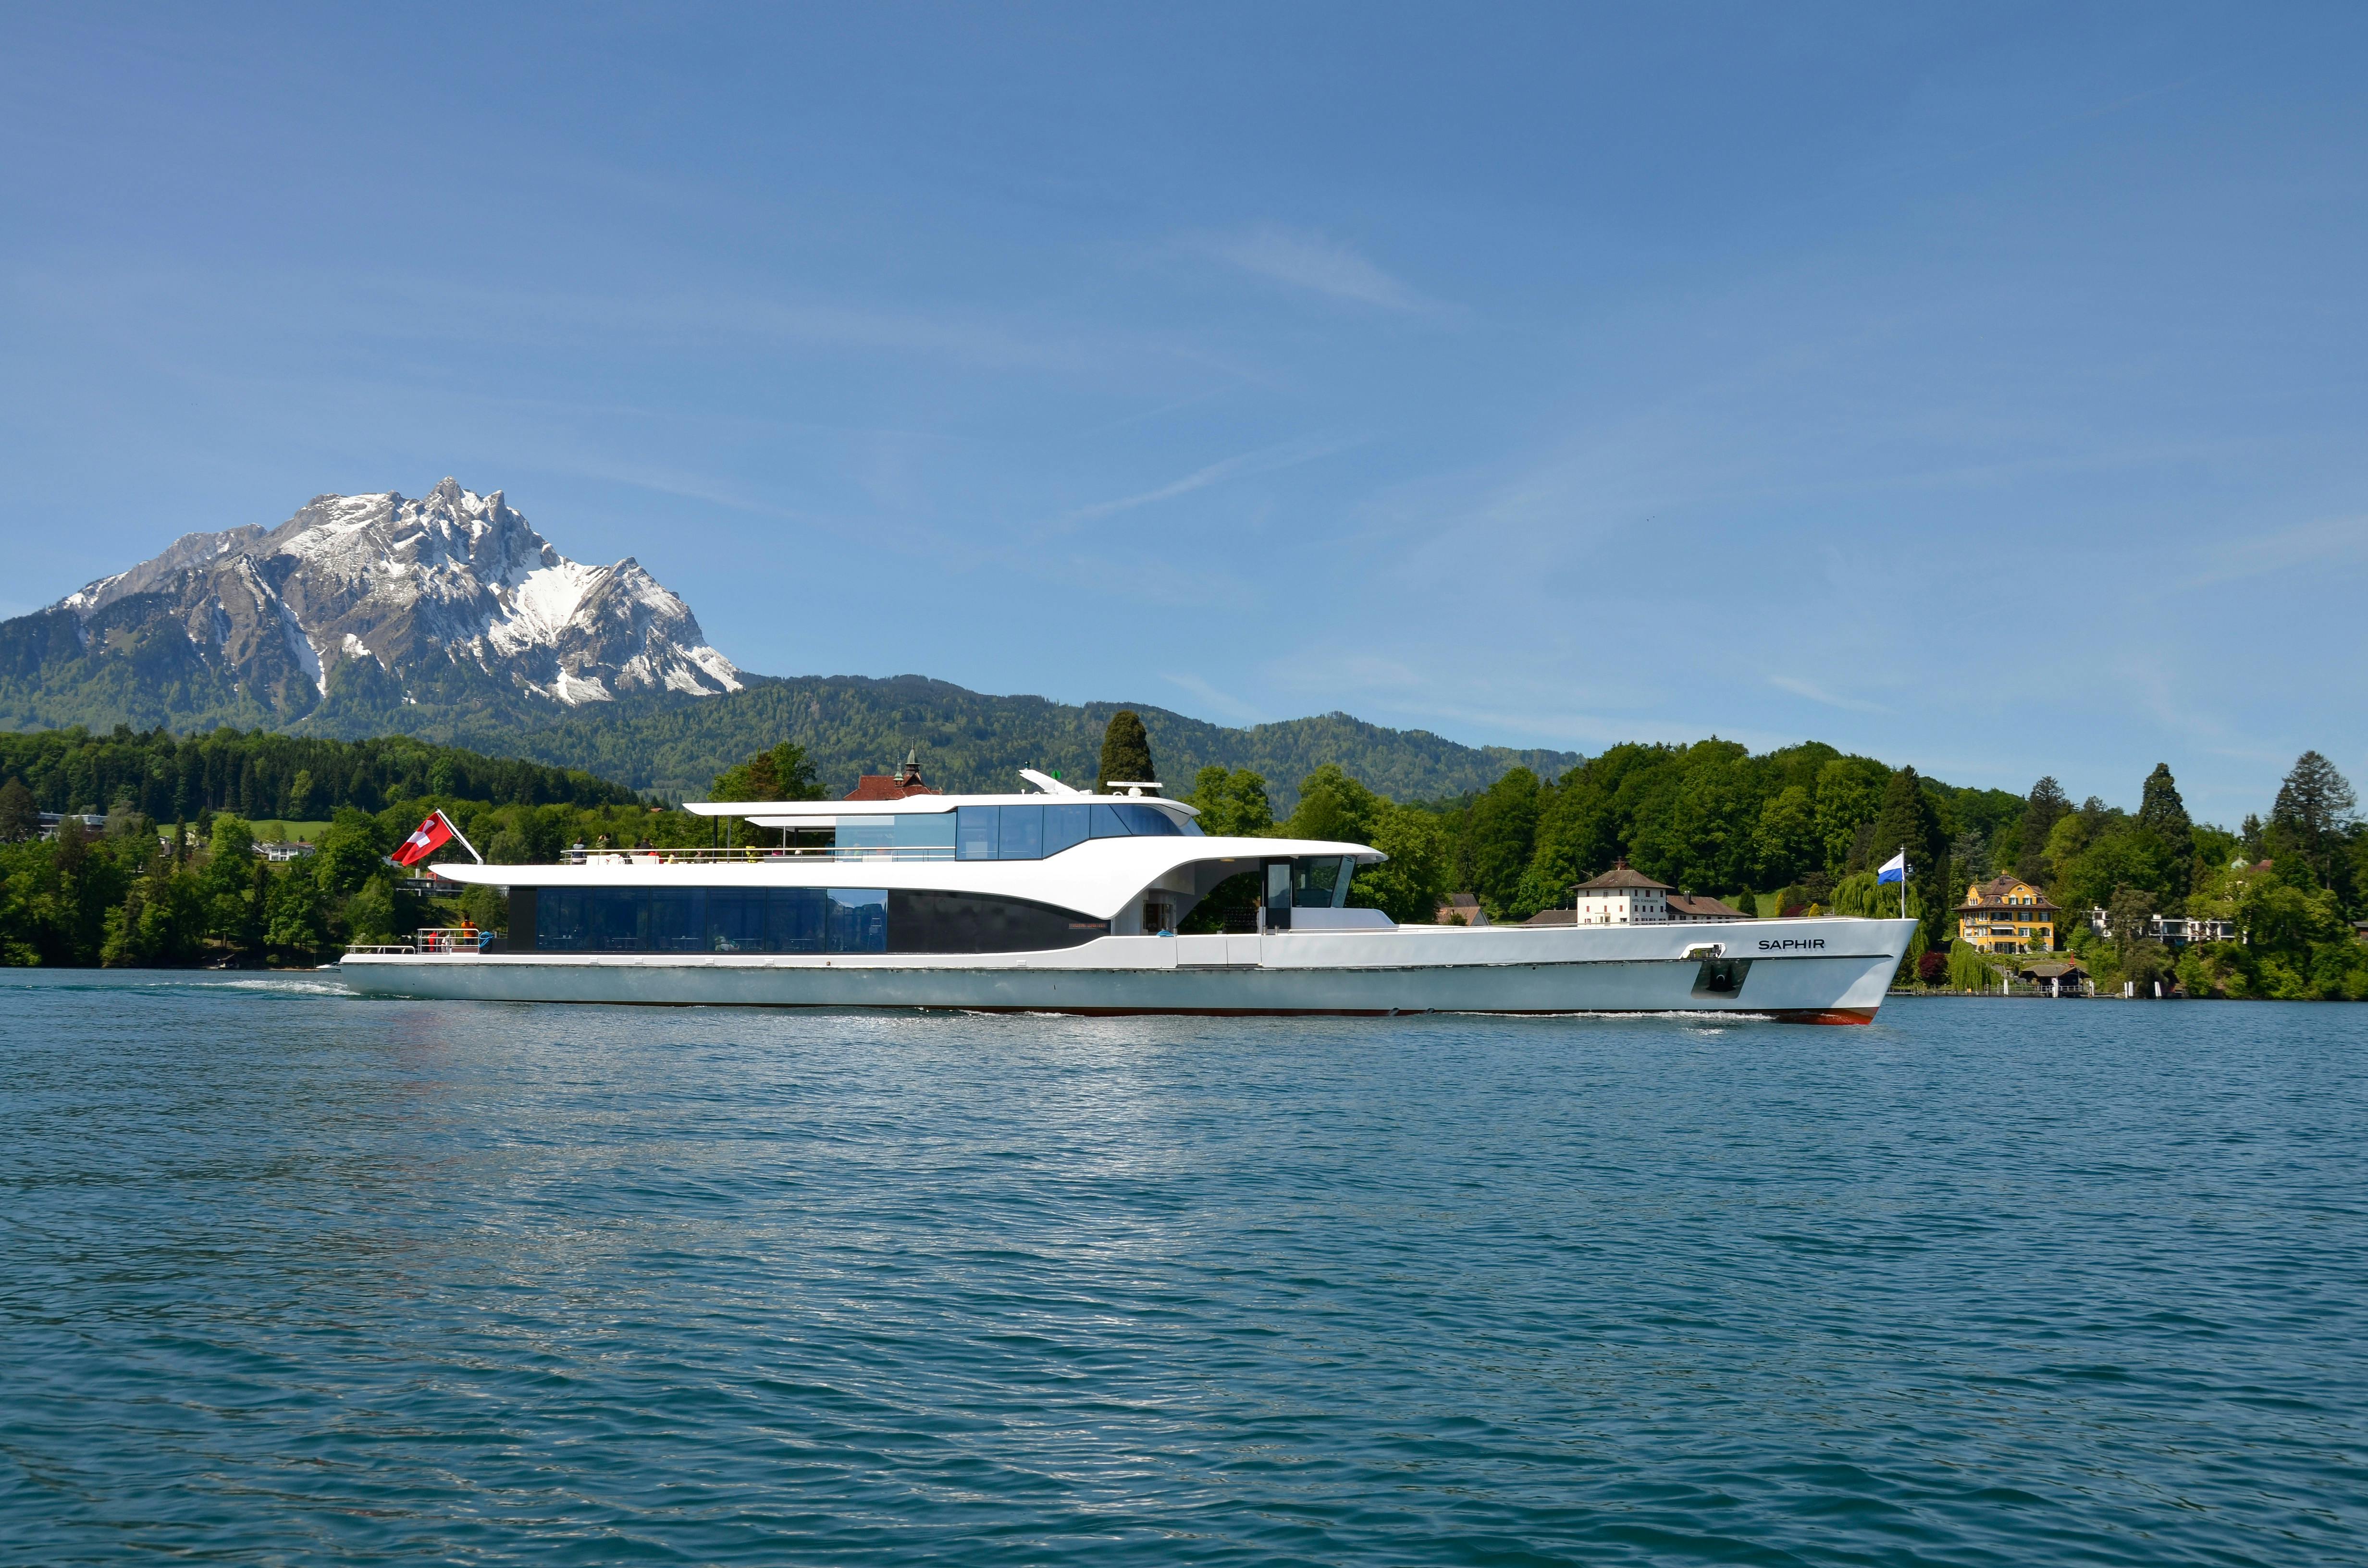 Panorama-Yacht Saphir Lake Lucerne 7.jpg